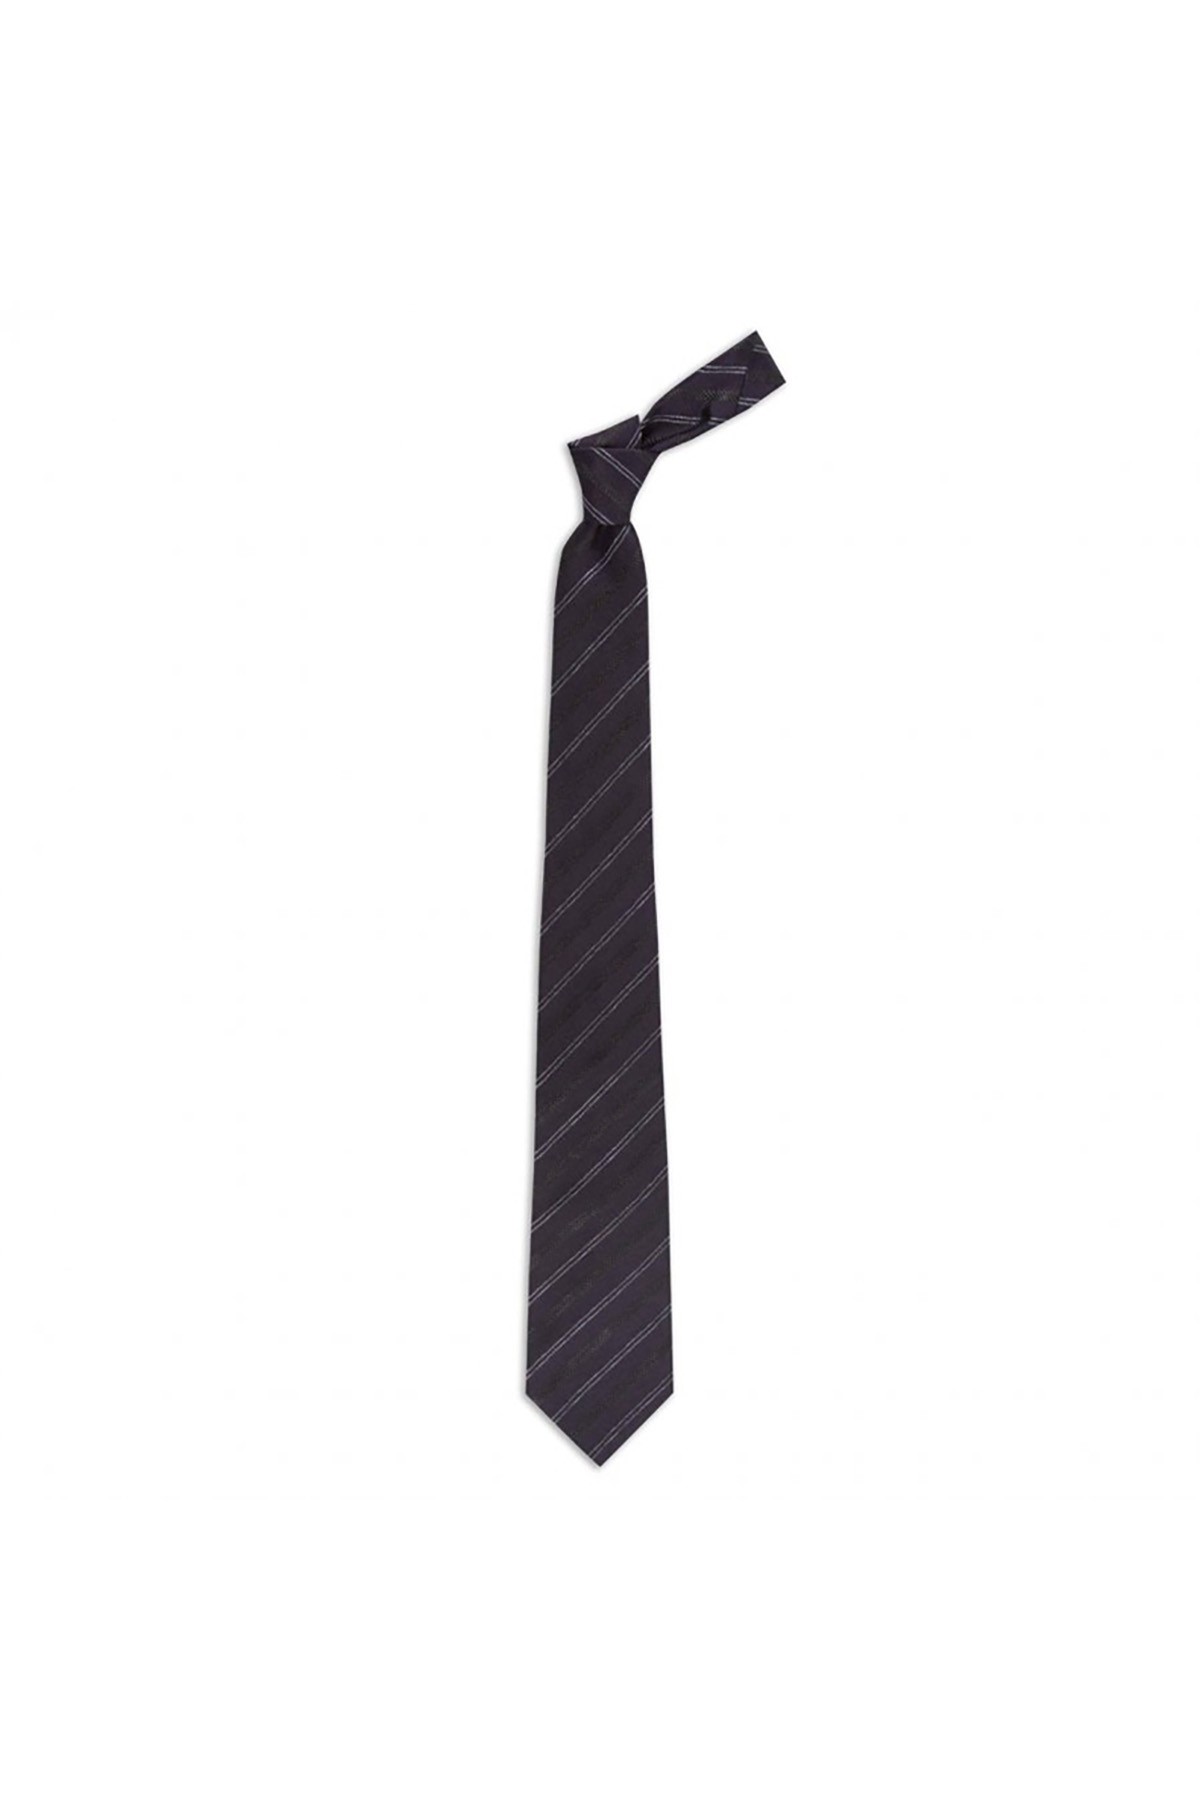 Desenli 8 cm genişliğinde yün ipek karışımlı kravat - Mor